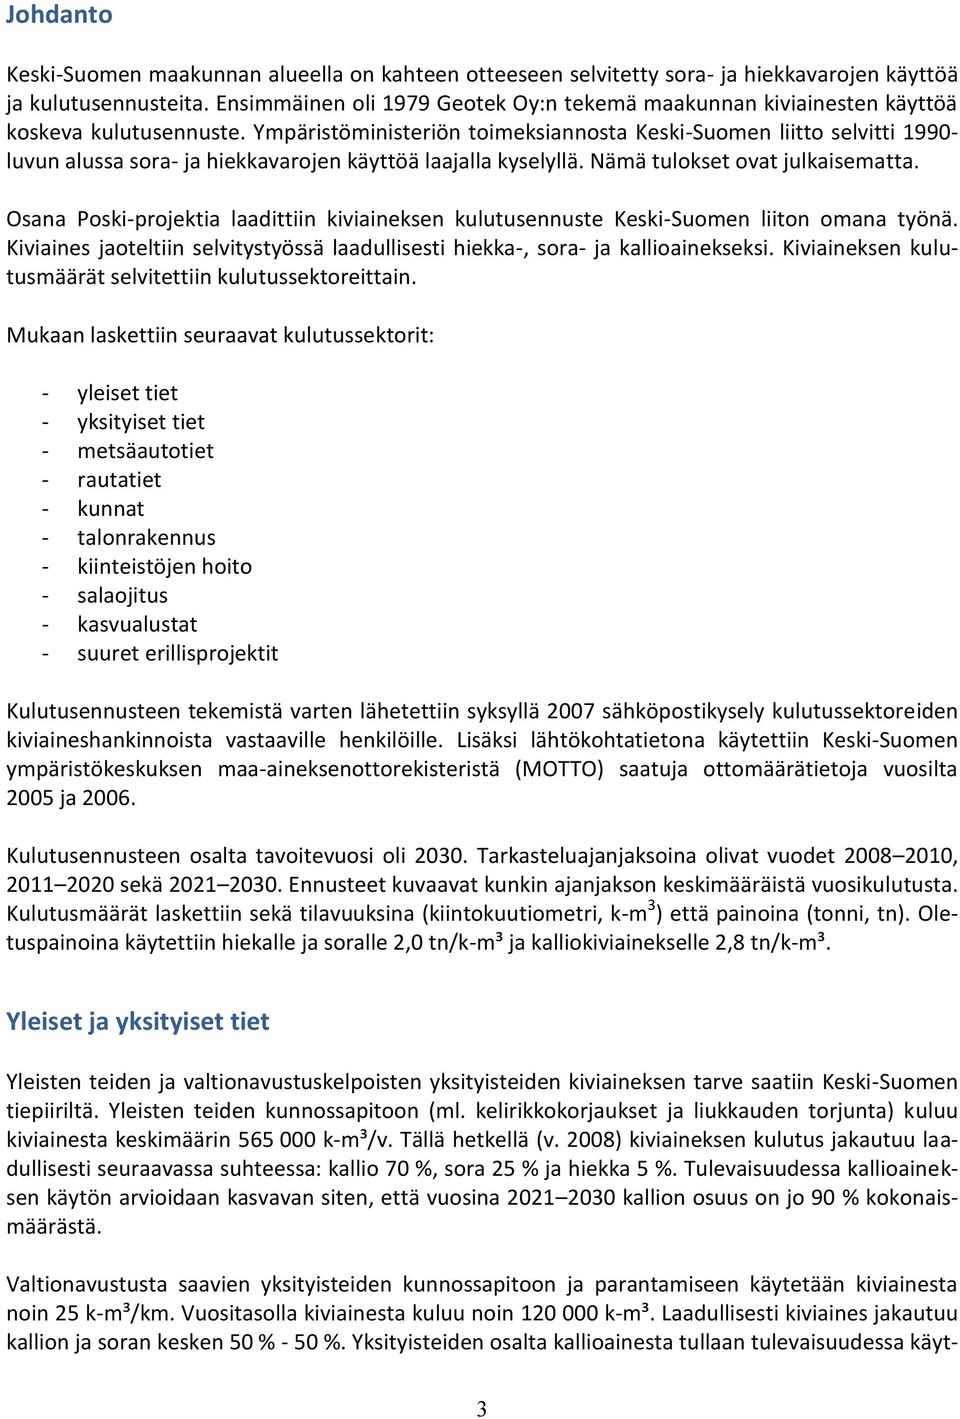 Ympäristöministeriön toimeksiannosta Keski-Suomen liitto selvitti 1990- luvun alussa sora- ja hiekkavarojen käyttöä laajalla kyselyllä. Nämä tulokset ovat julkaisematta.